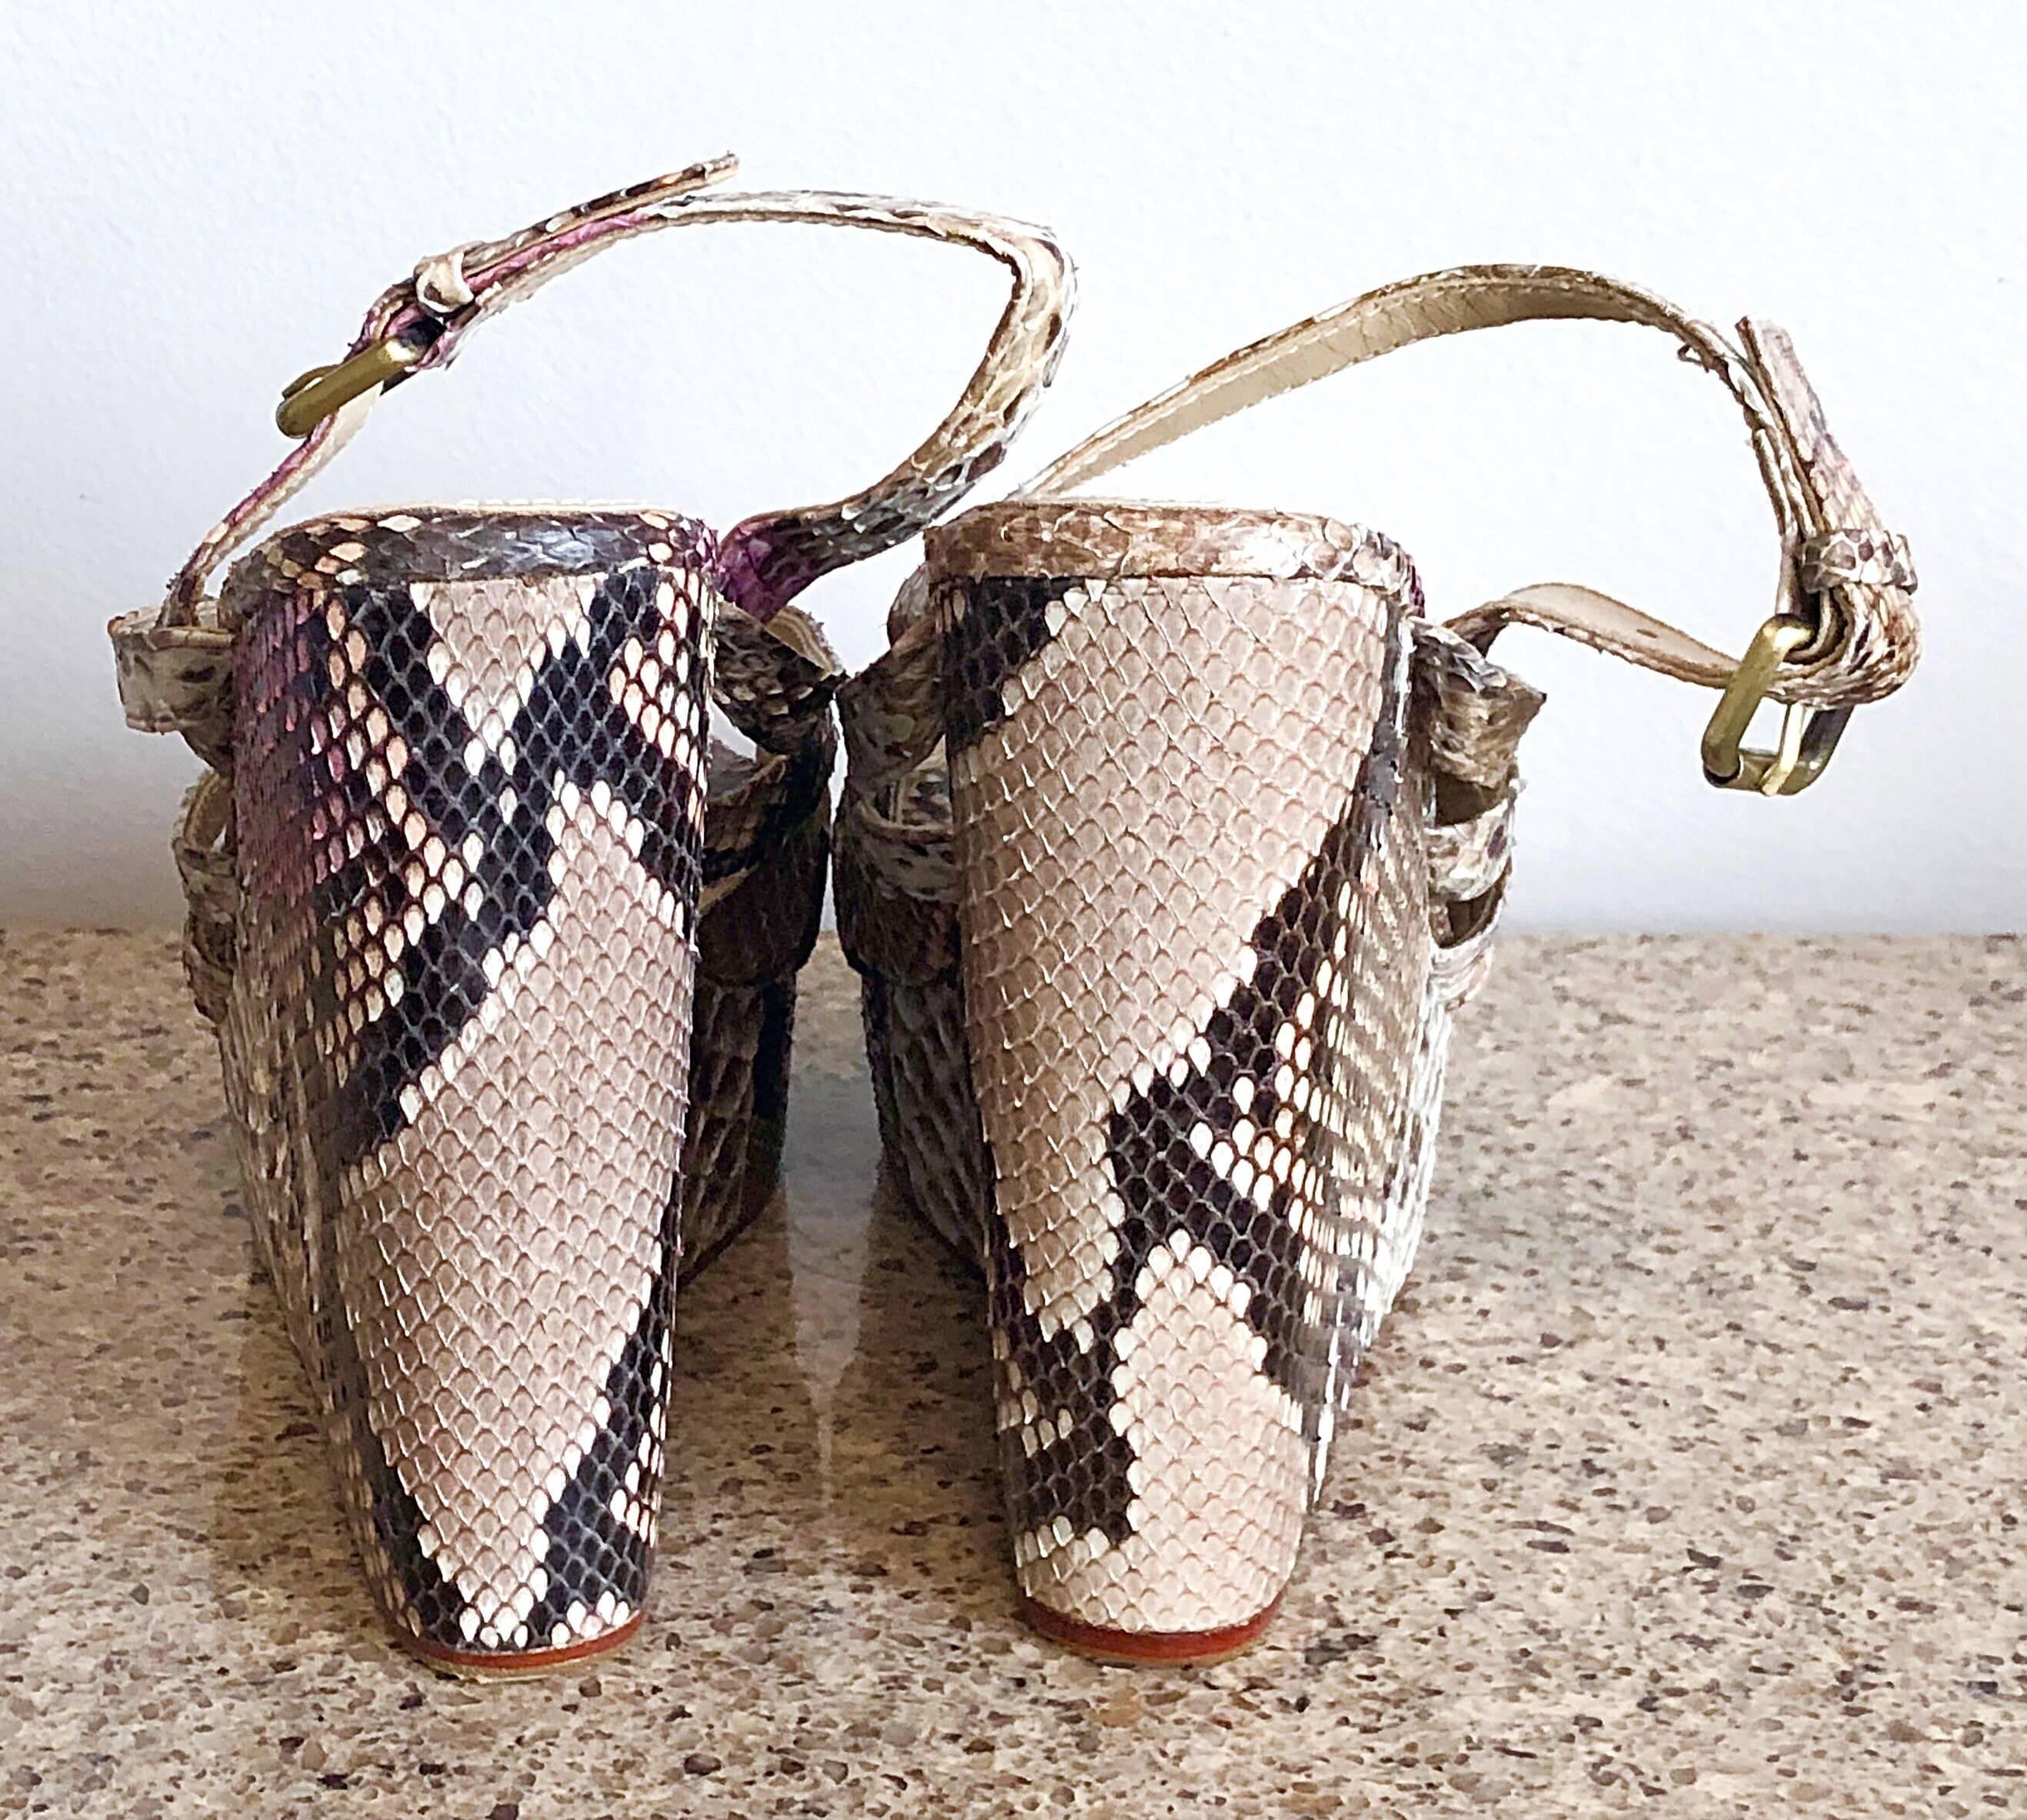 pink snakeskin heels